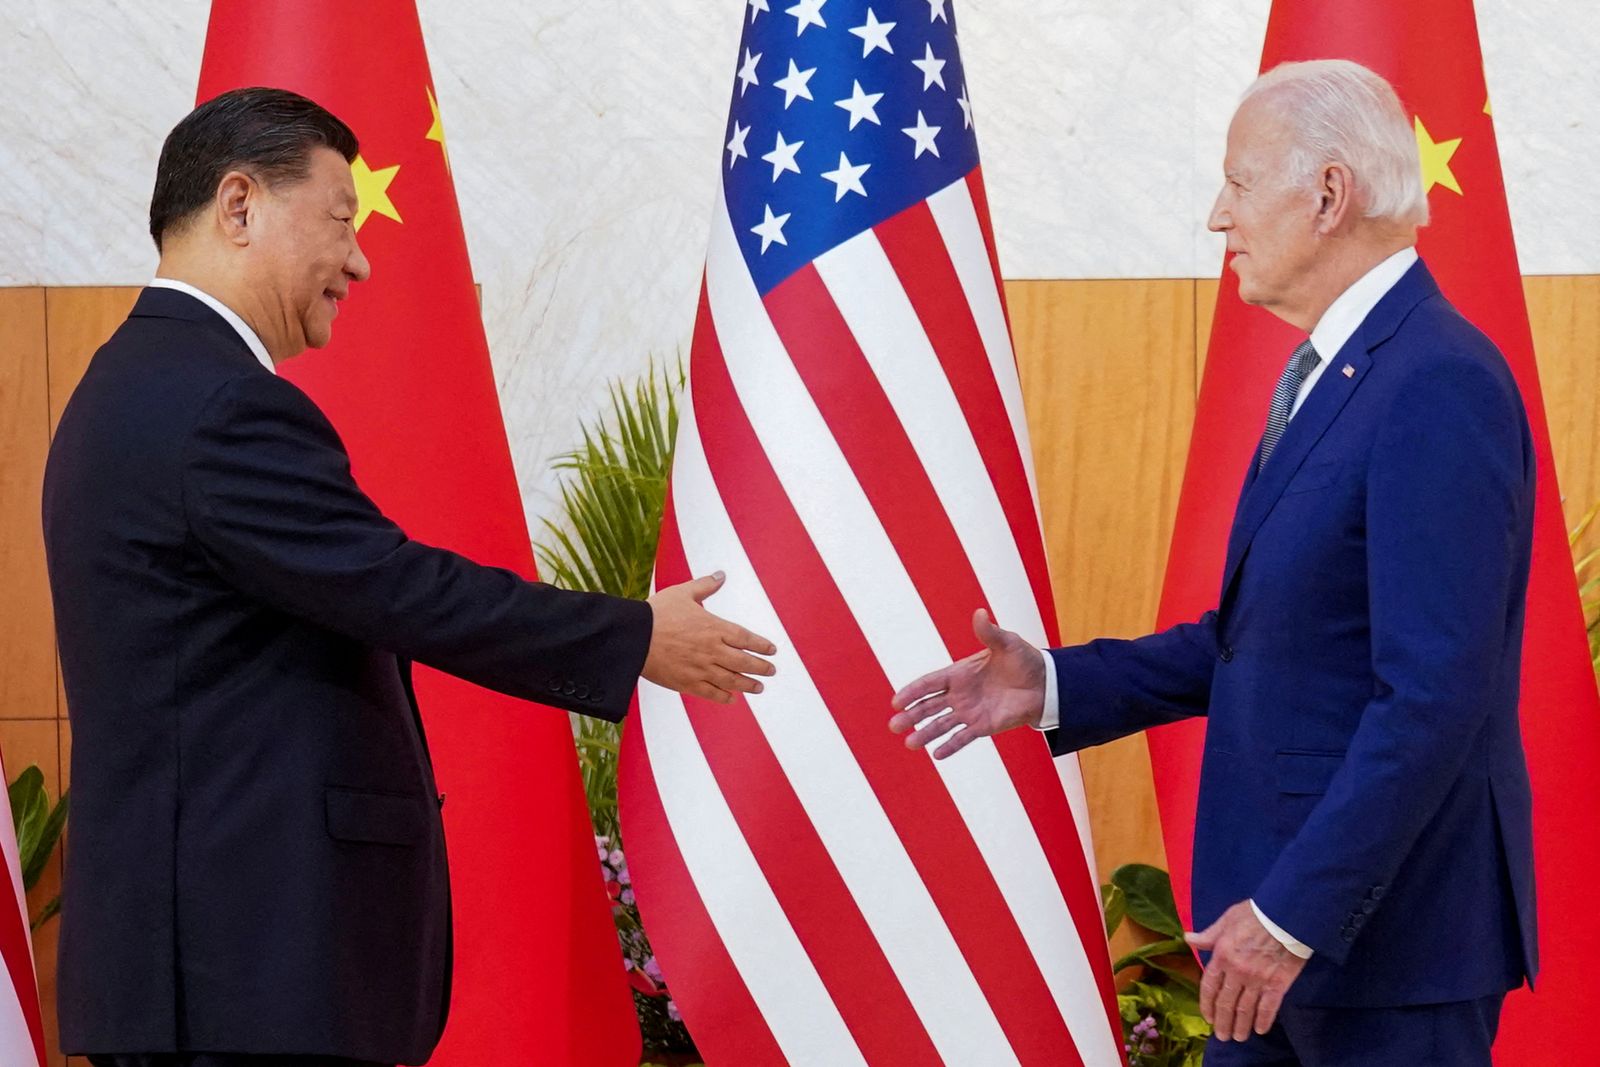 الرئيس الأميركي جو بايدن ونظيره الصيني شي جين بينج خلال لقائهما في بالي بإندونيسيا على هامش قمة مجموعة العشرين، 14 نوفمبر 2022 - REUTERS